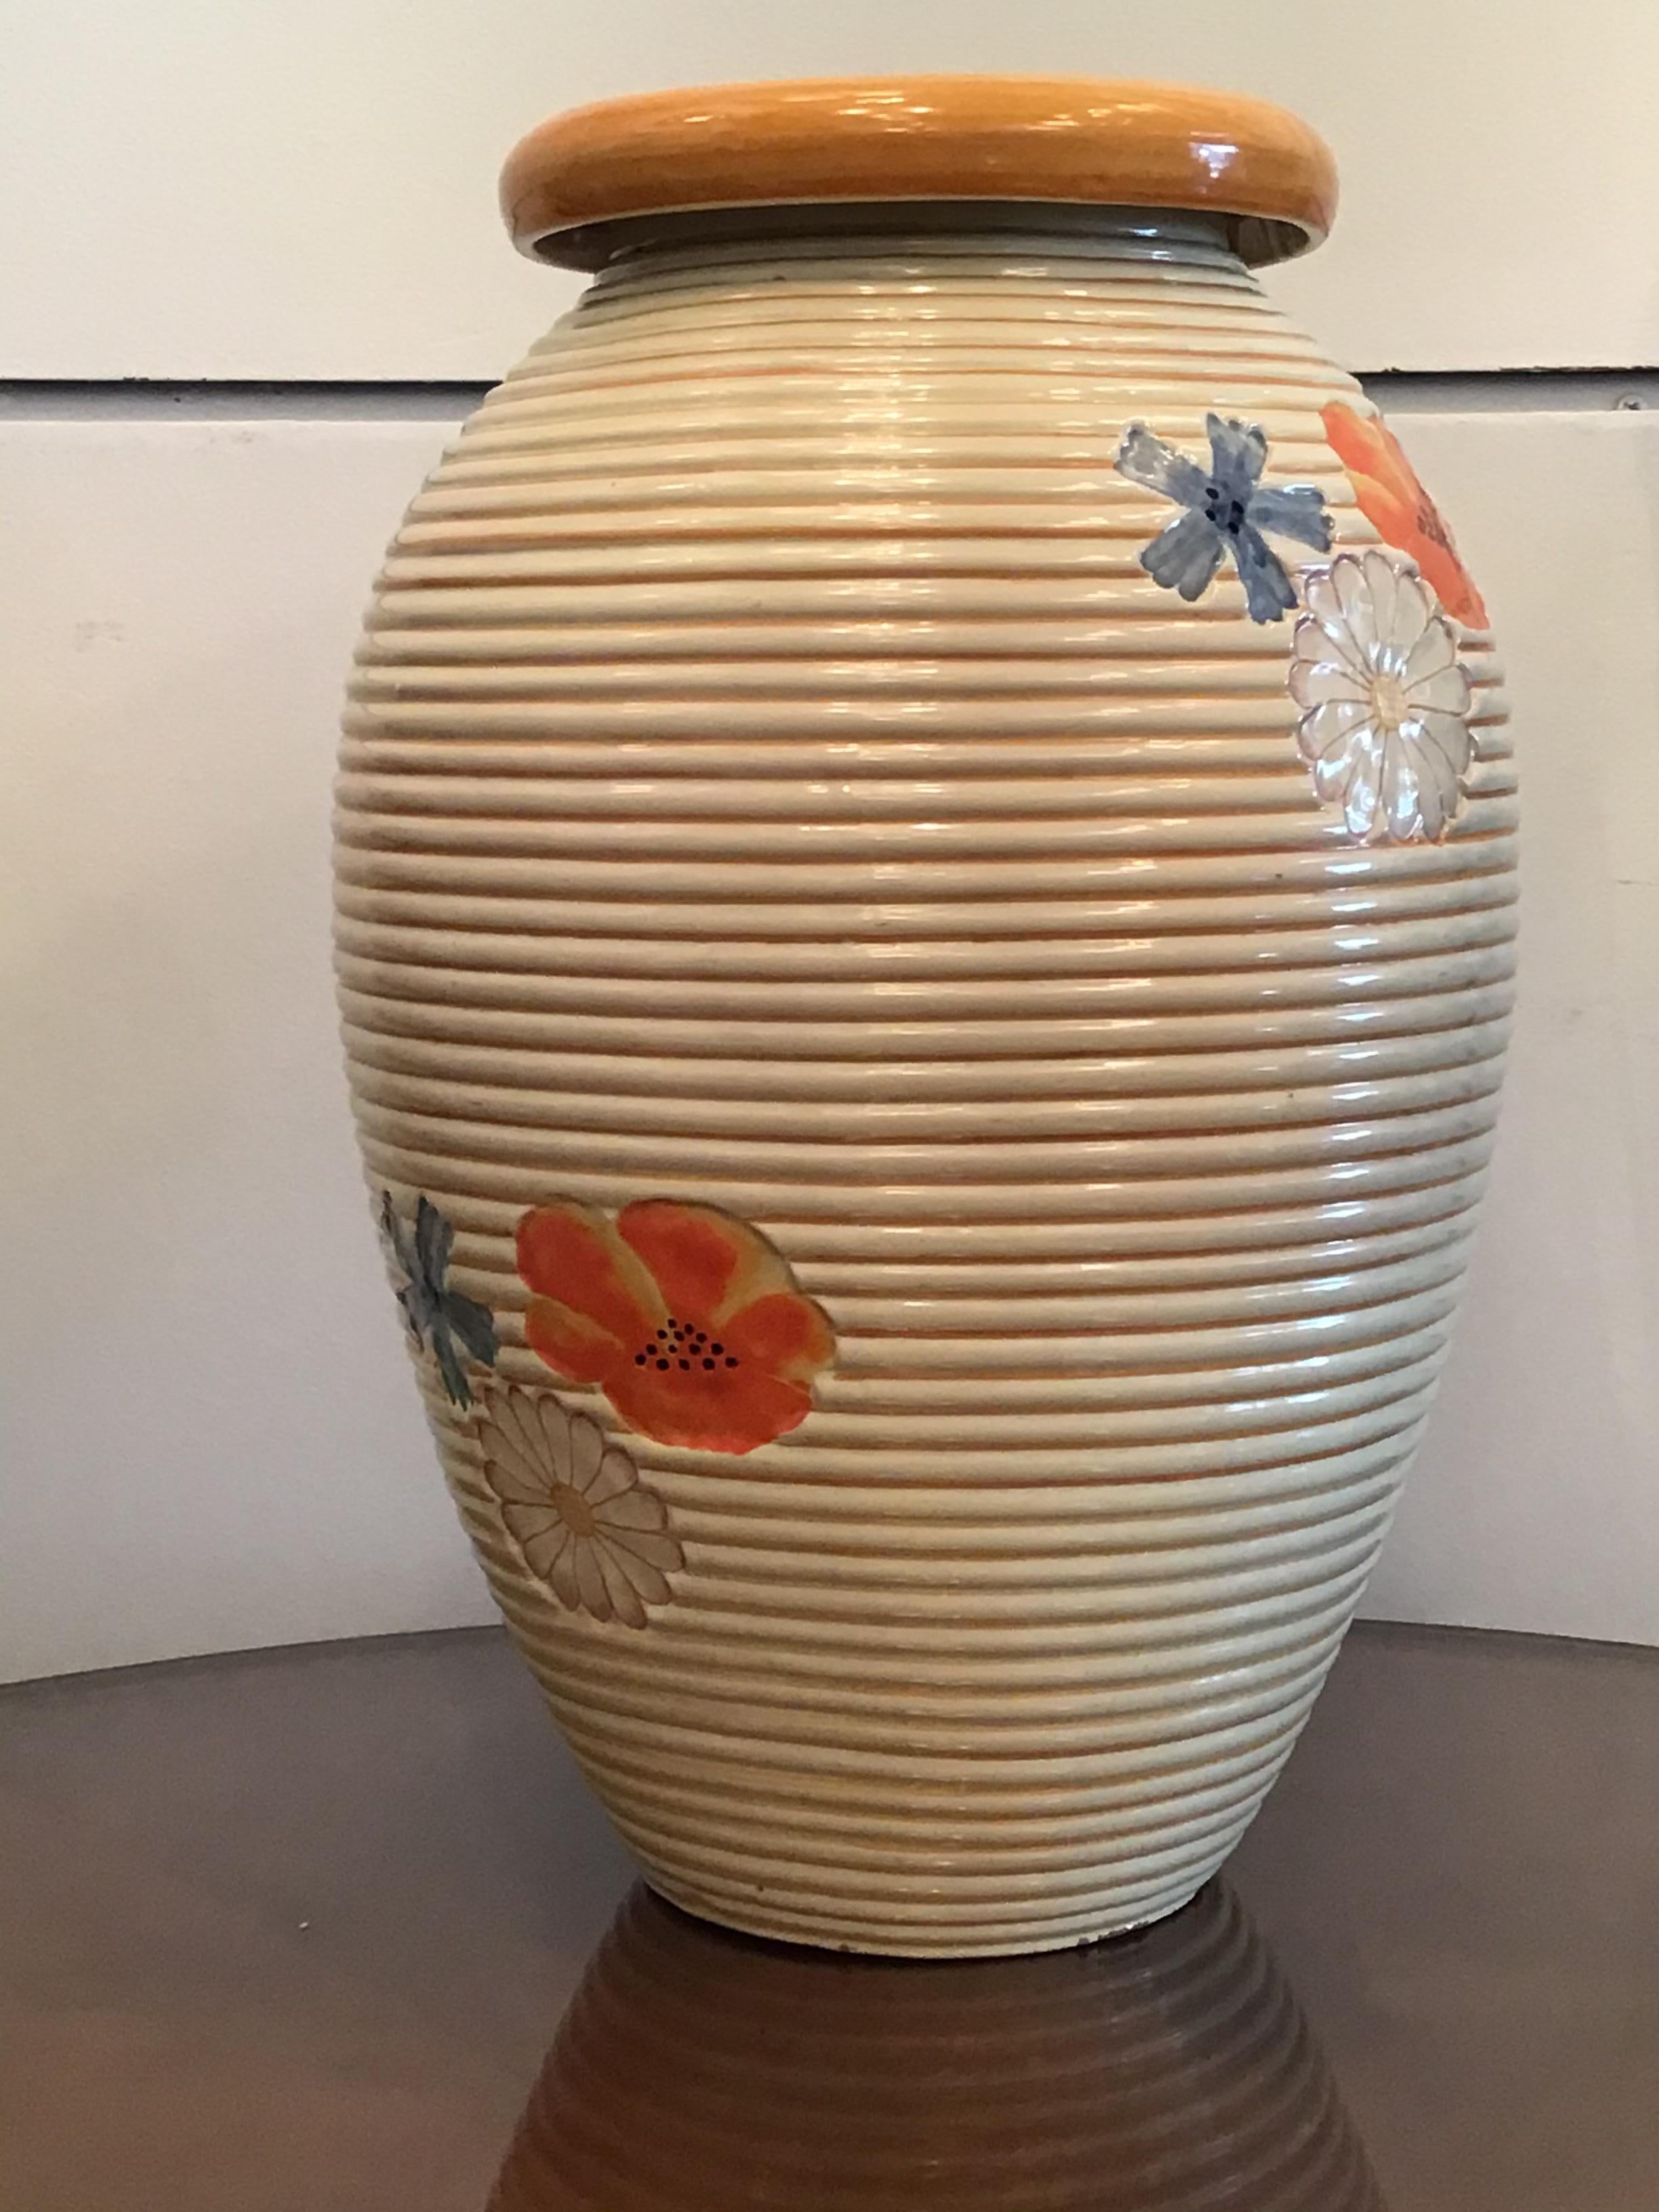 Pucci Umbertide Vase /Umbrella Stand Ceramic, 1950, Italy For Sale 5